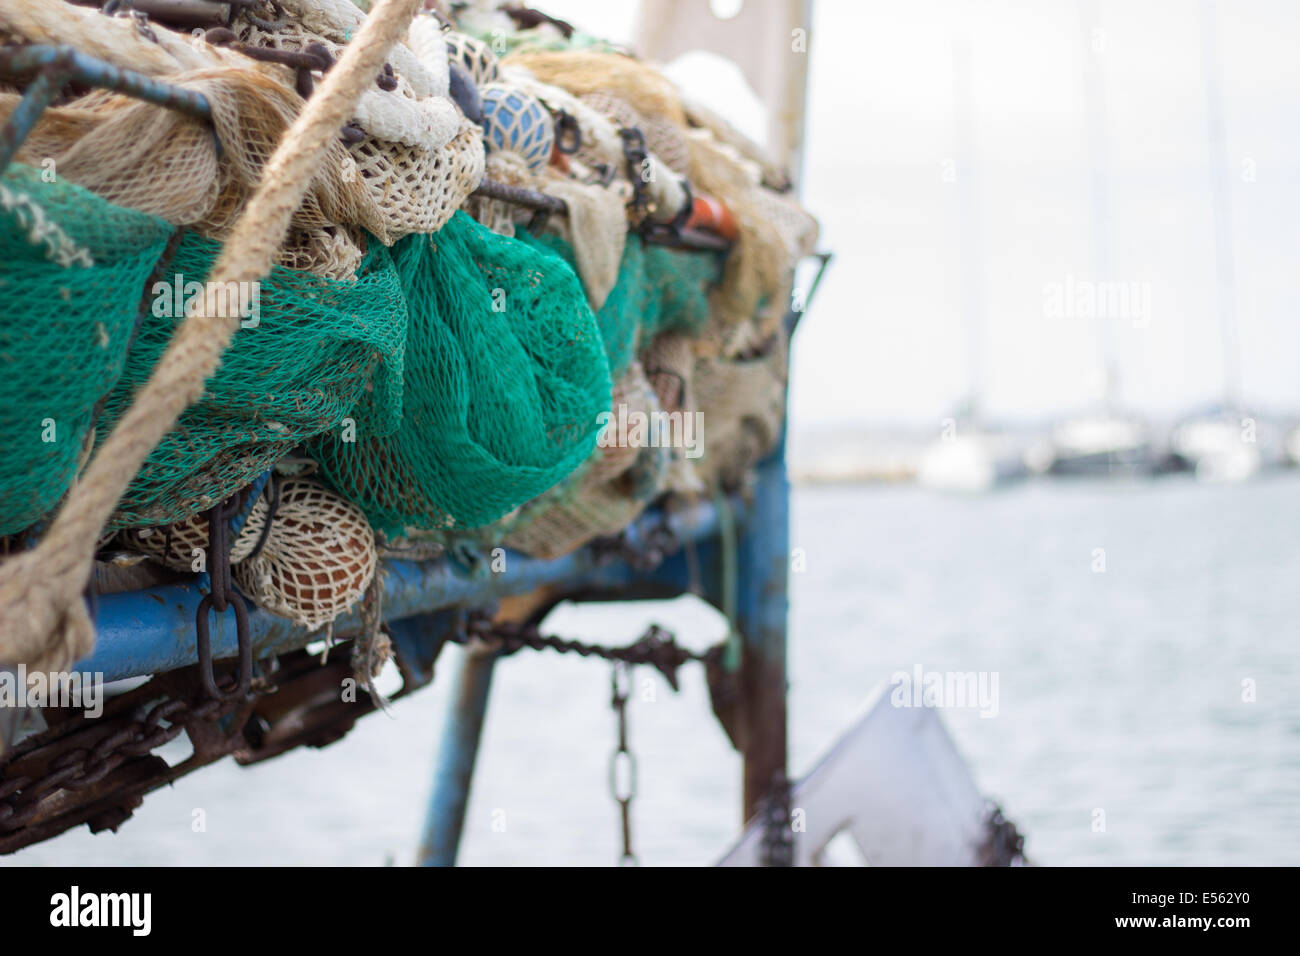 'Net' de pesca industria pesquera mar buque comercial industrial 'Copiar' barco espacio horizontal Foto de stock